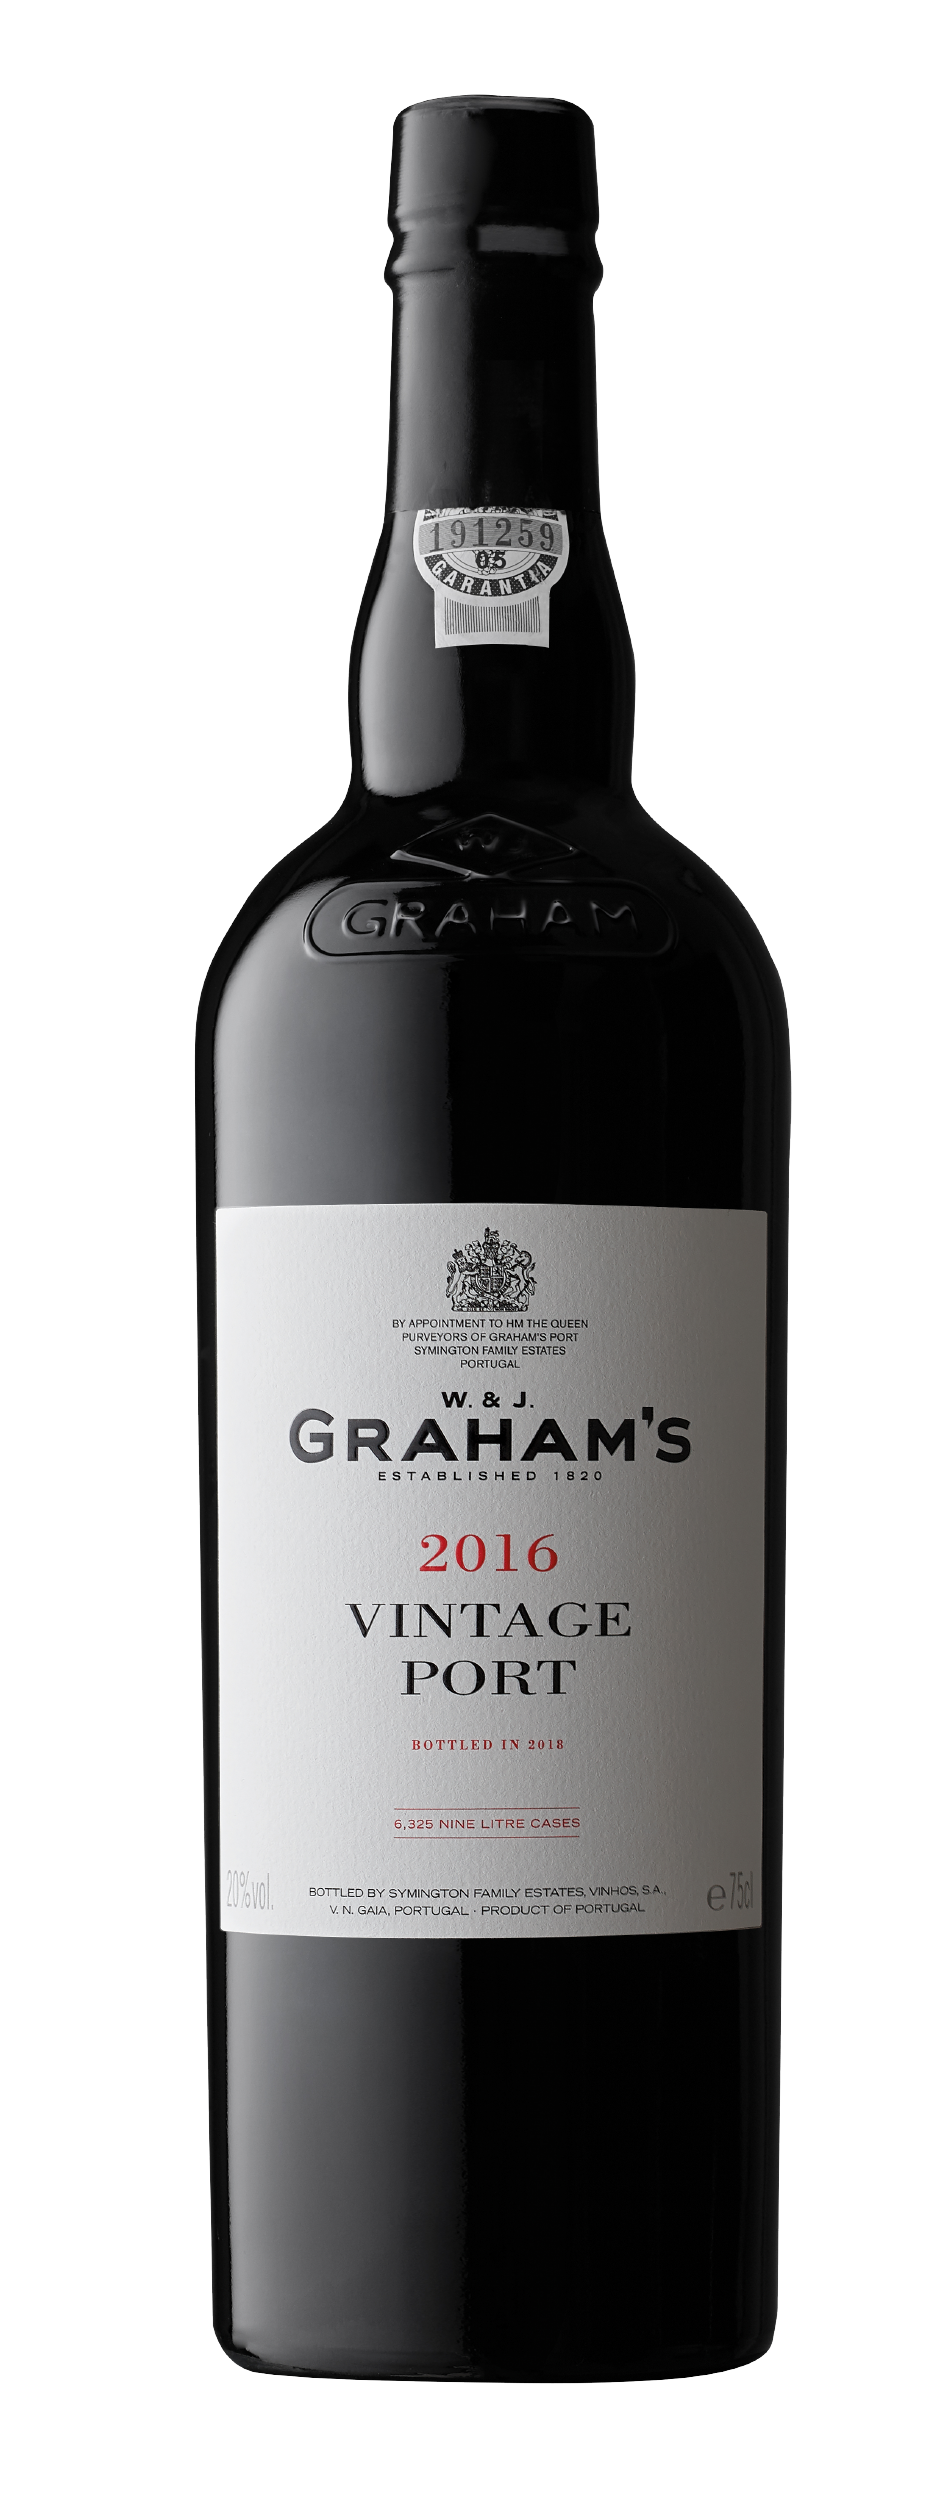 Product Image for GRAHAM'S VINTAGE PORT 2016 - MAGNUM